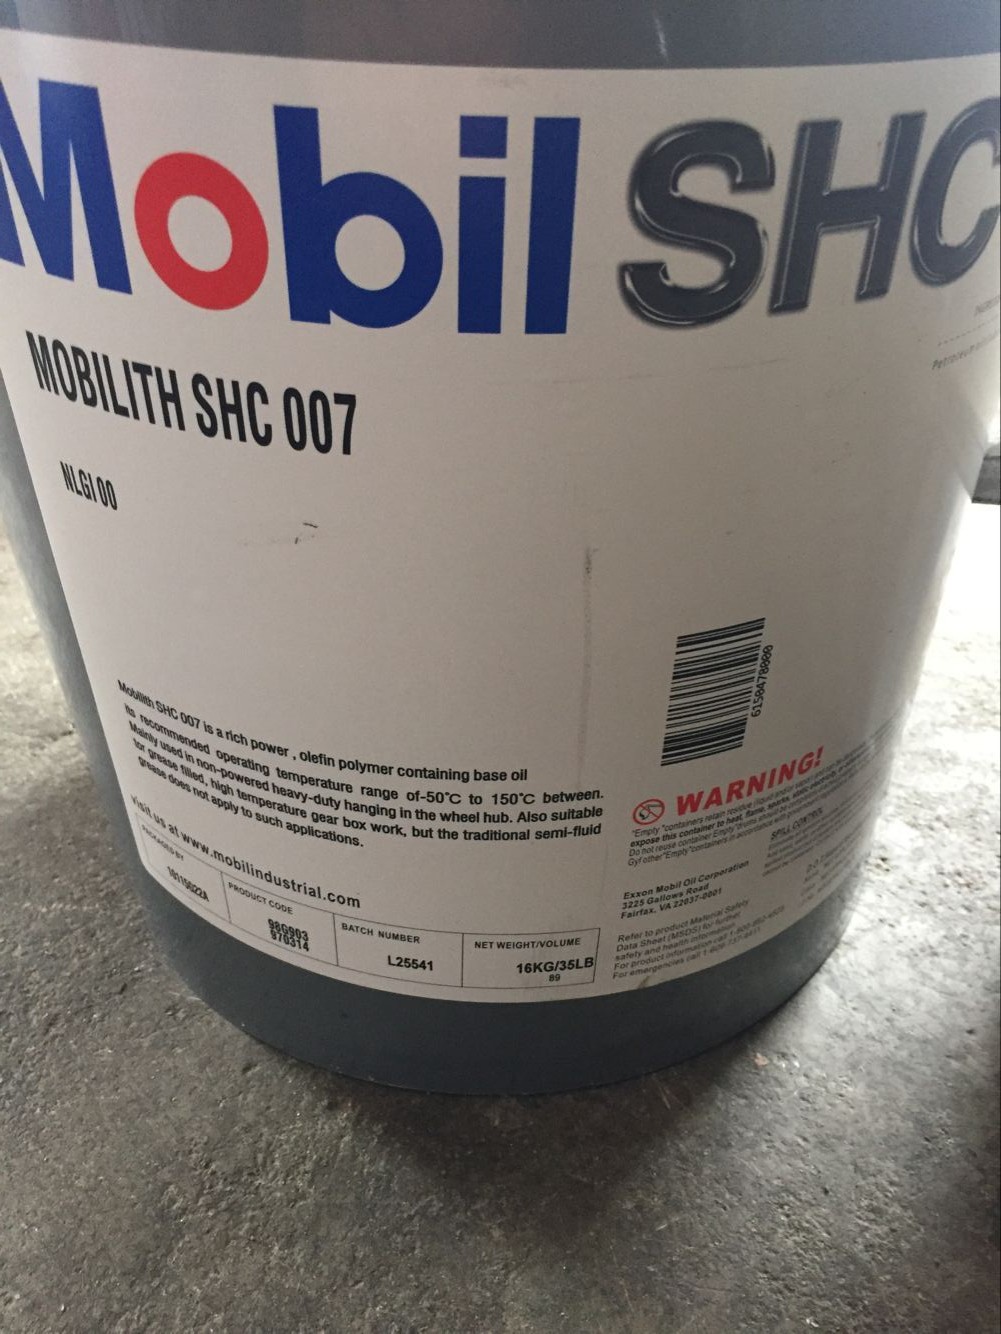 美孚力富SHC007合成高温滑脂MOBIL LITH SHC多用途较压润滑脂